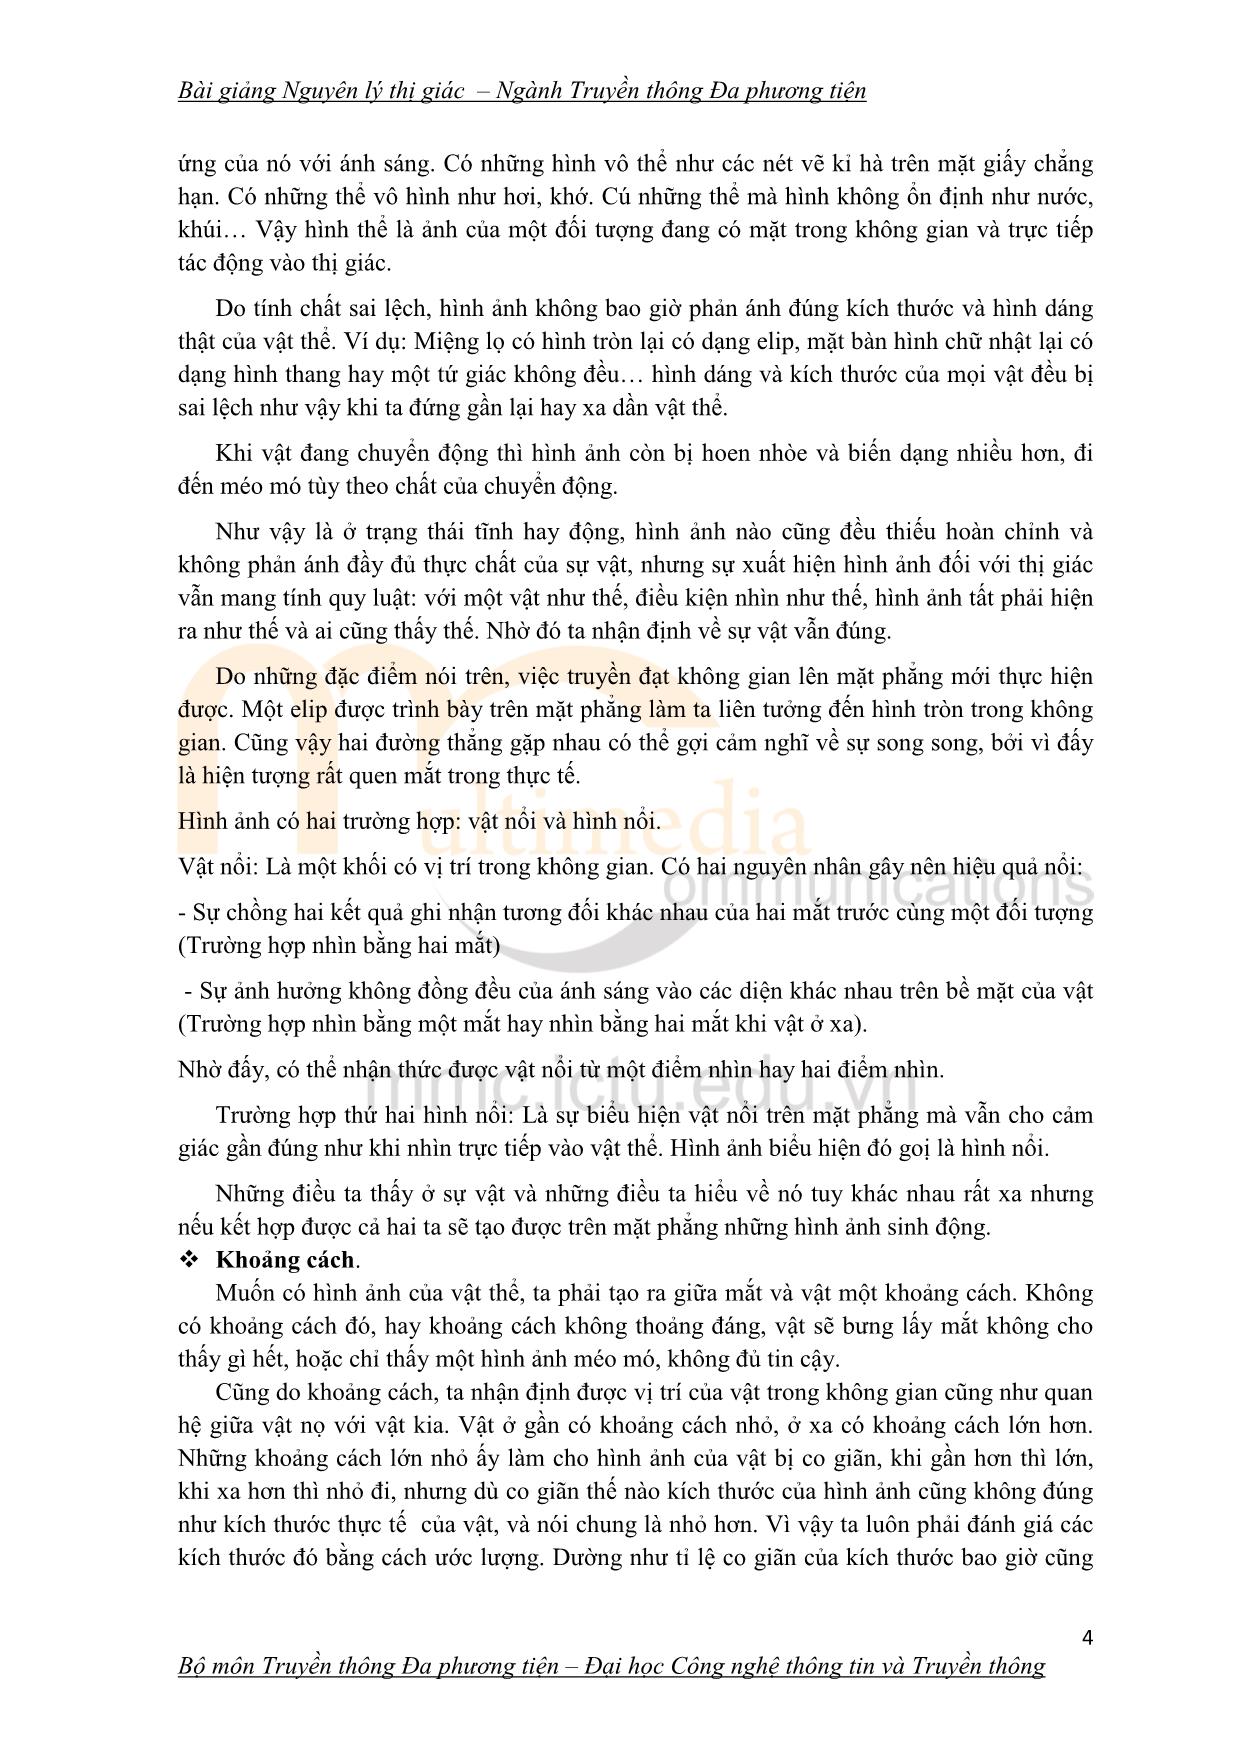 Giáo trình Nguyên lý thị giác (Phần 1) trang 4